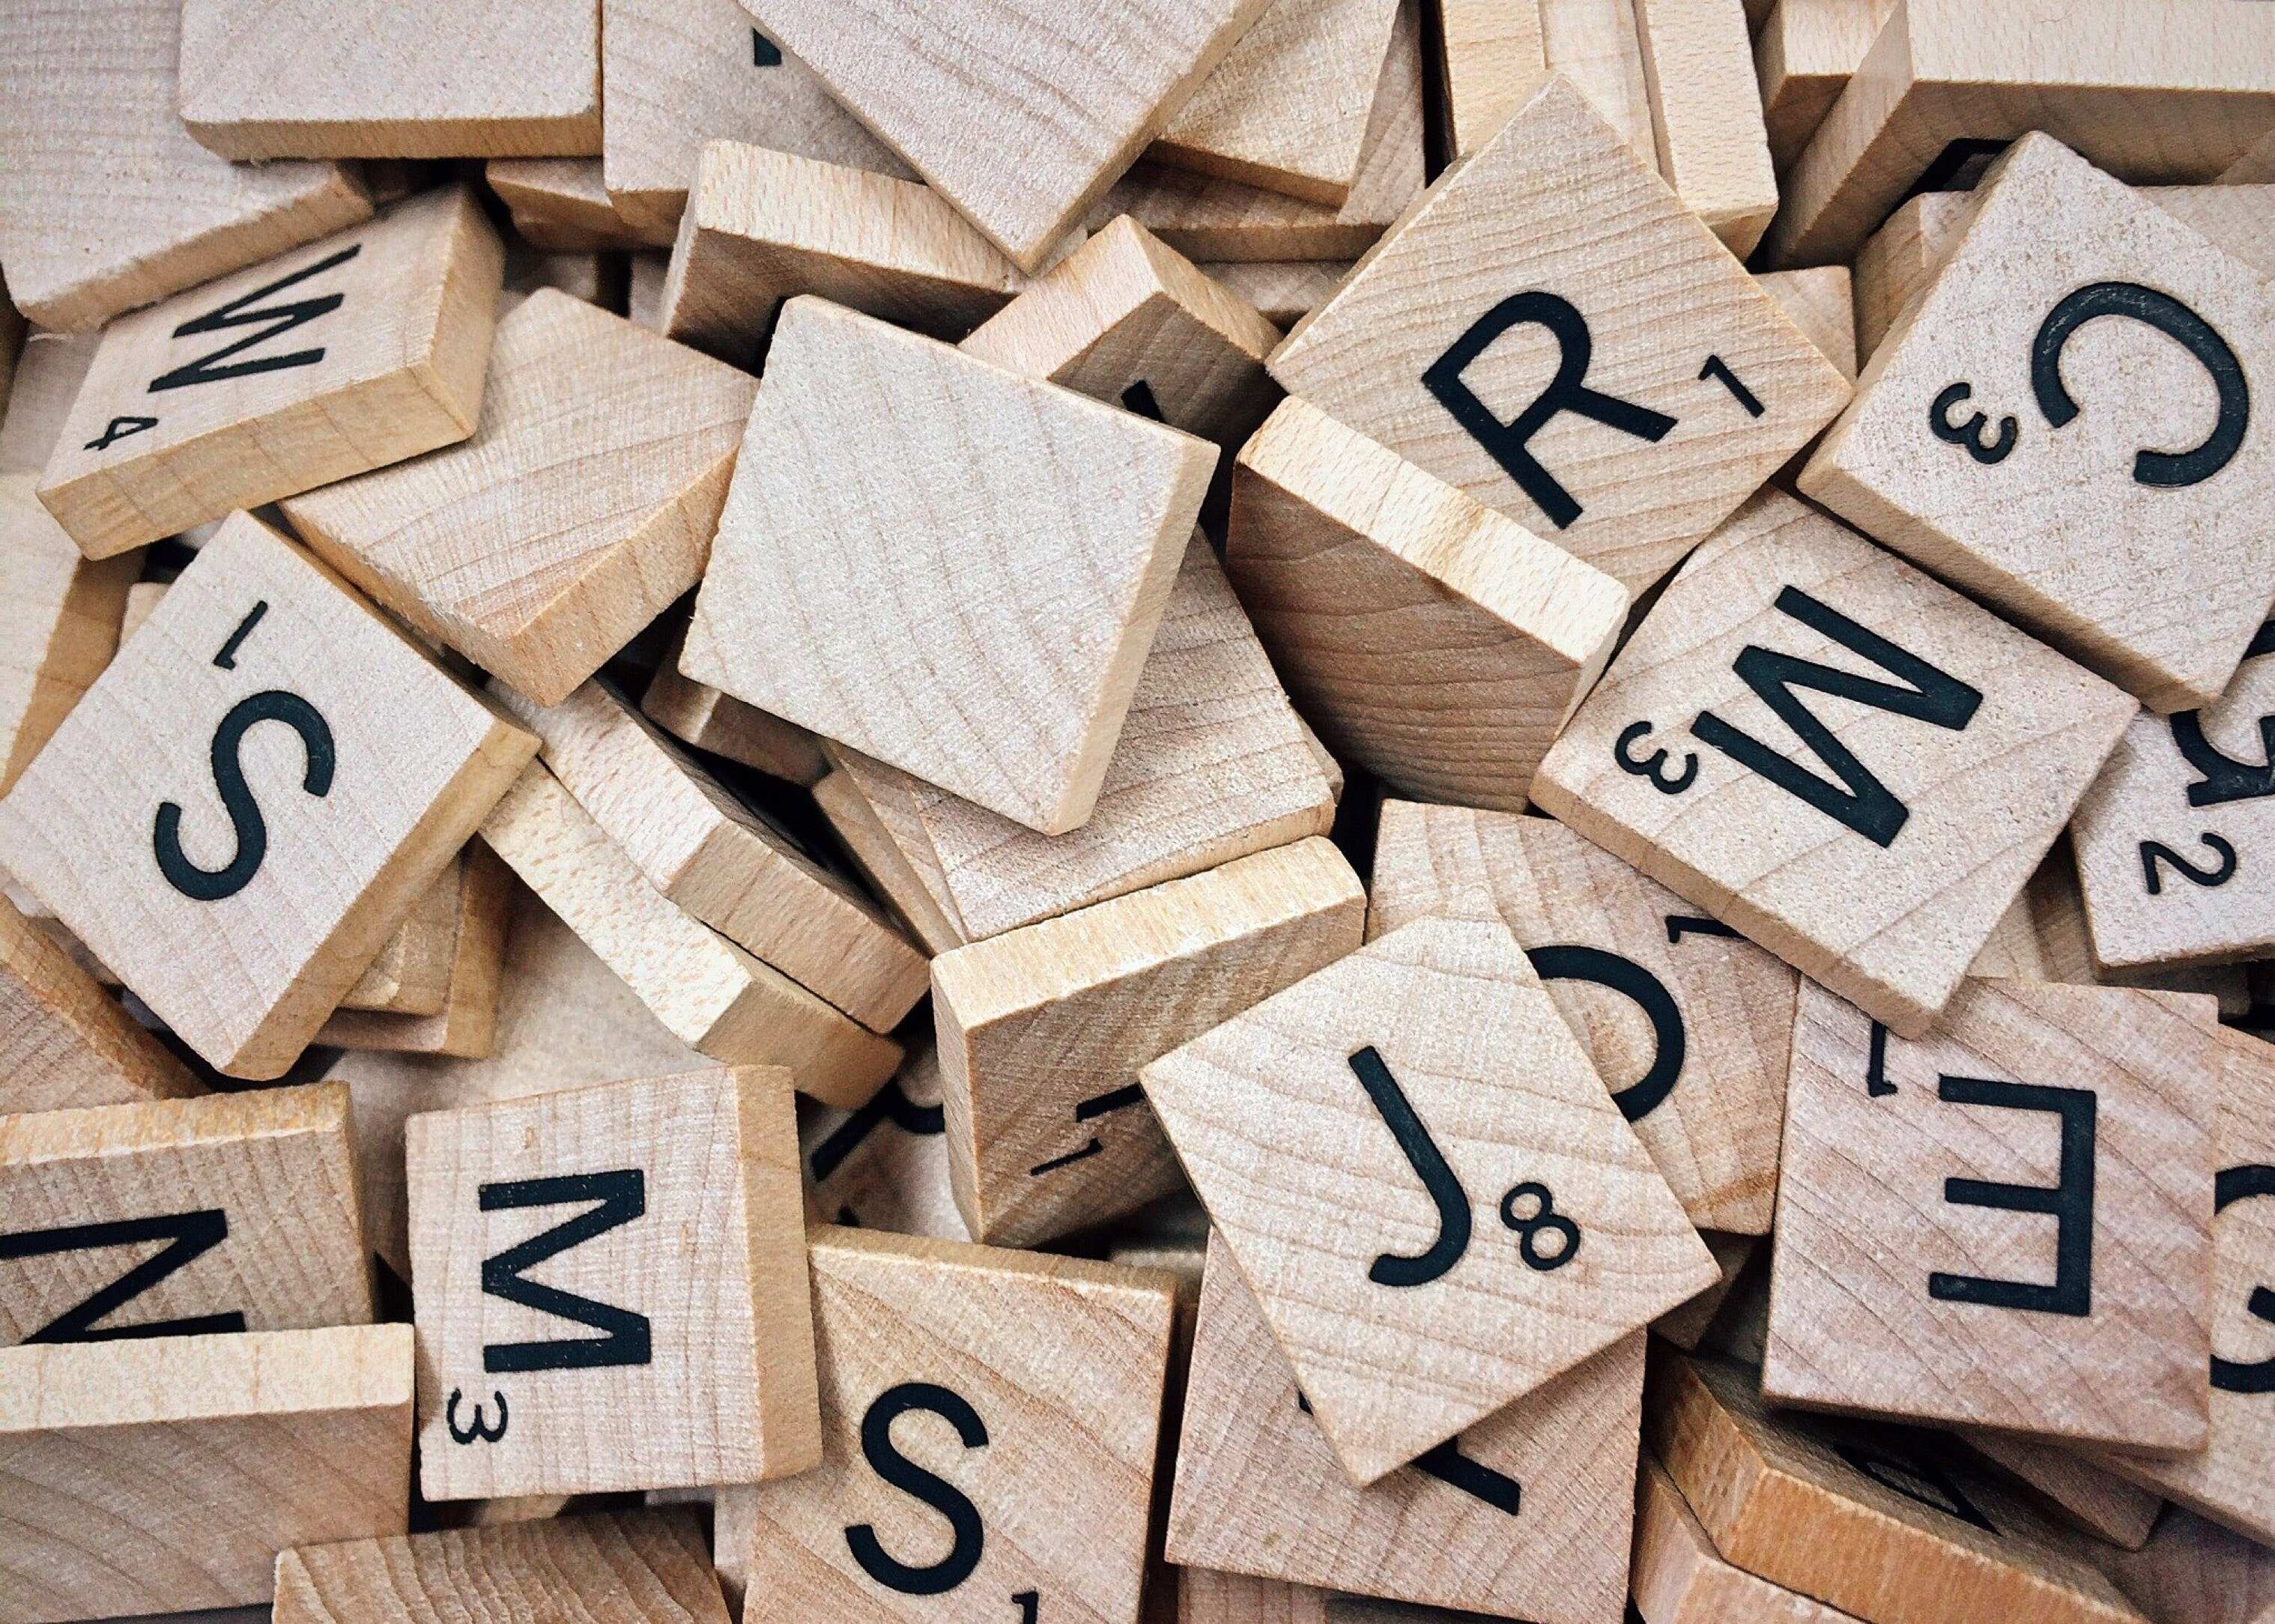 Fichas del juego Scrabble